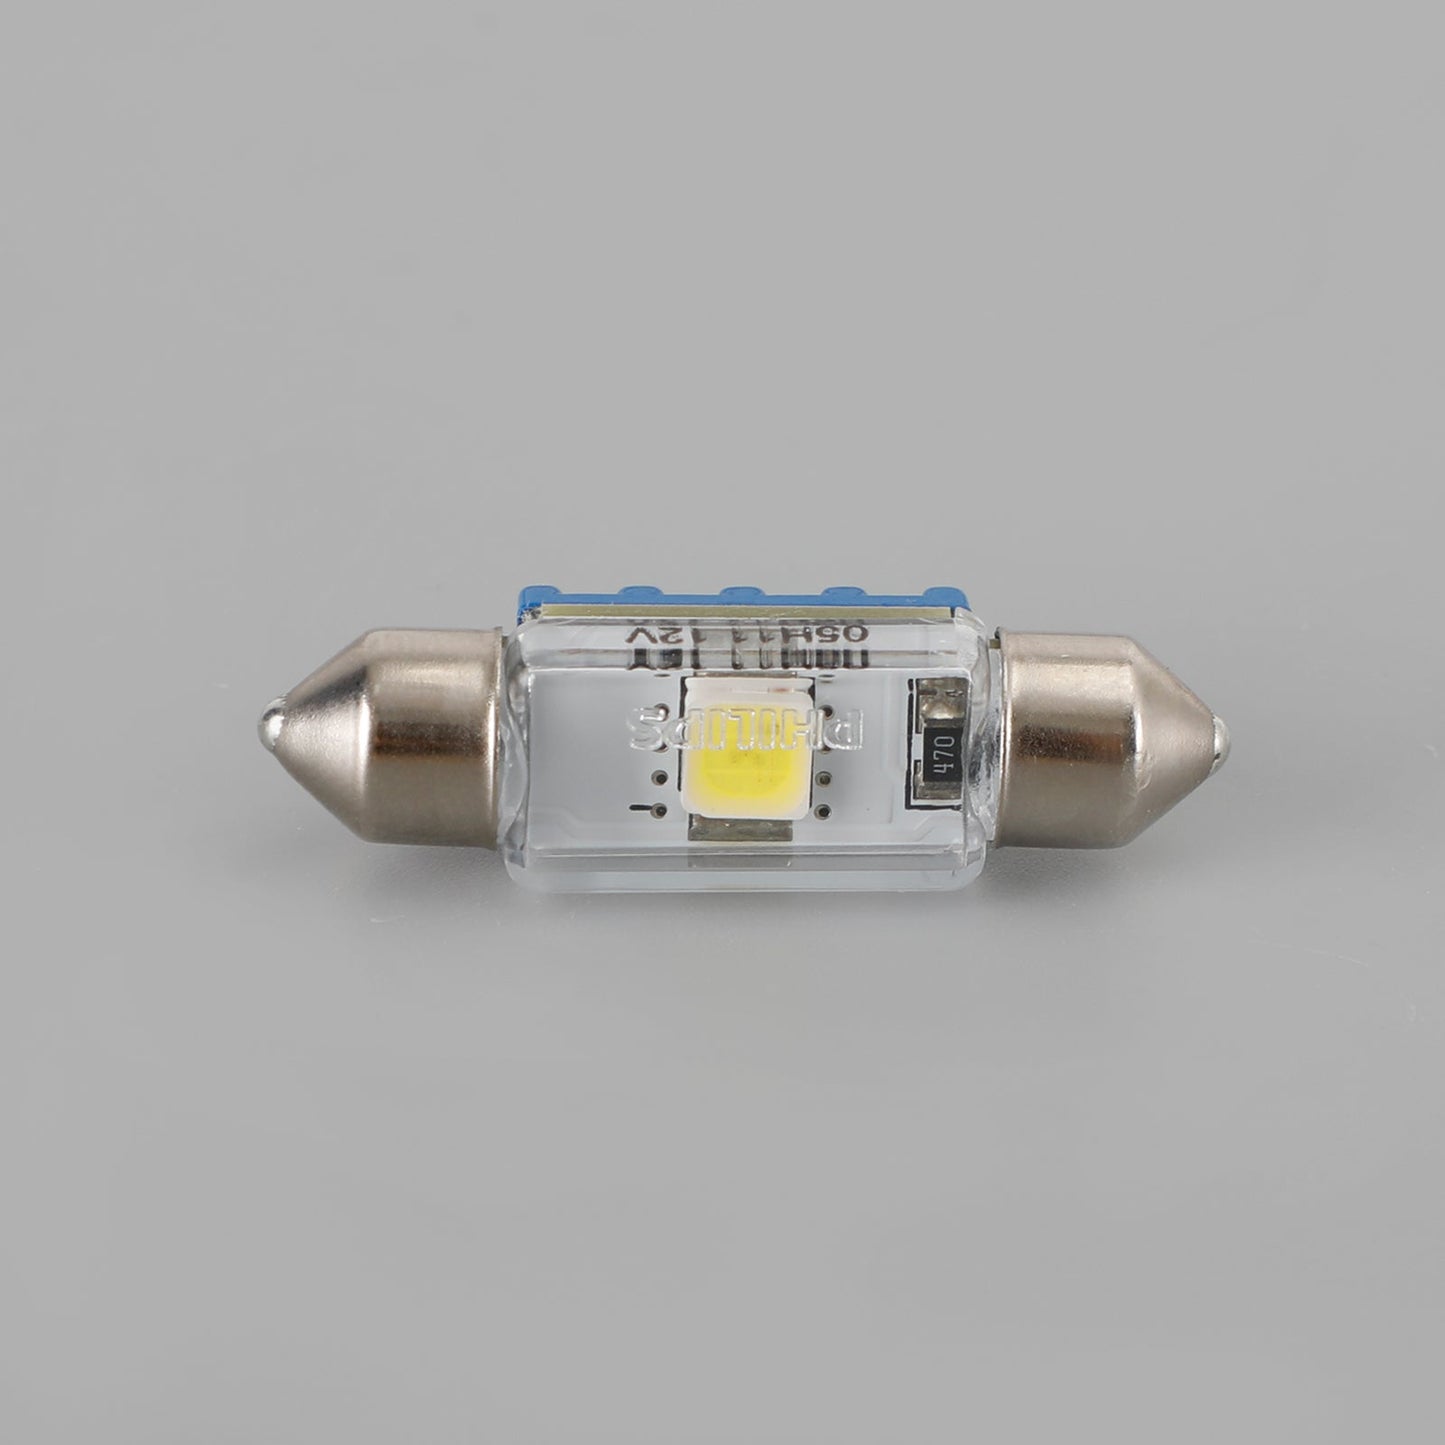 For Philips 129446000KX1 Car Ultinon LED Miniature Bulb T10X37 6000K 12V